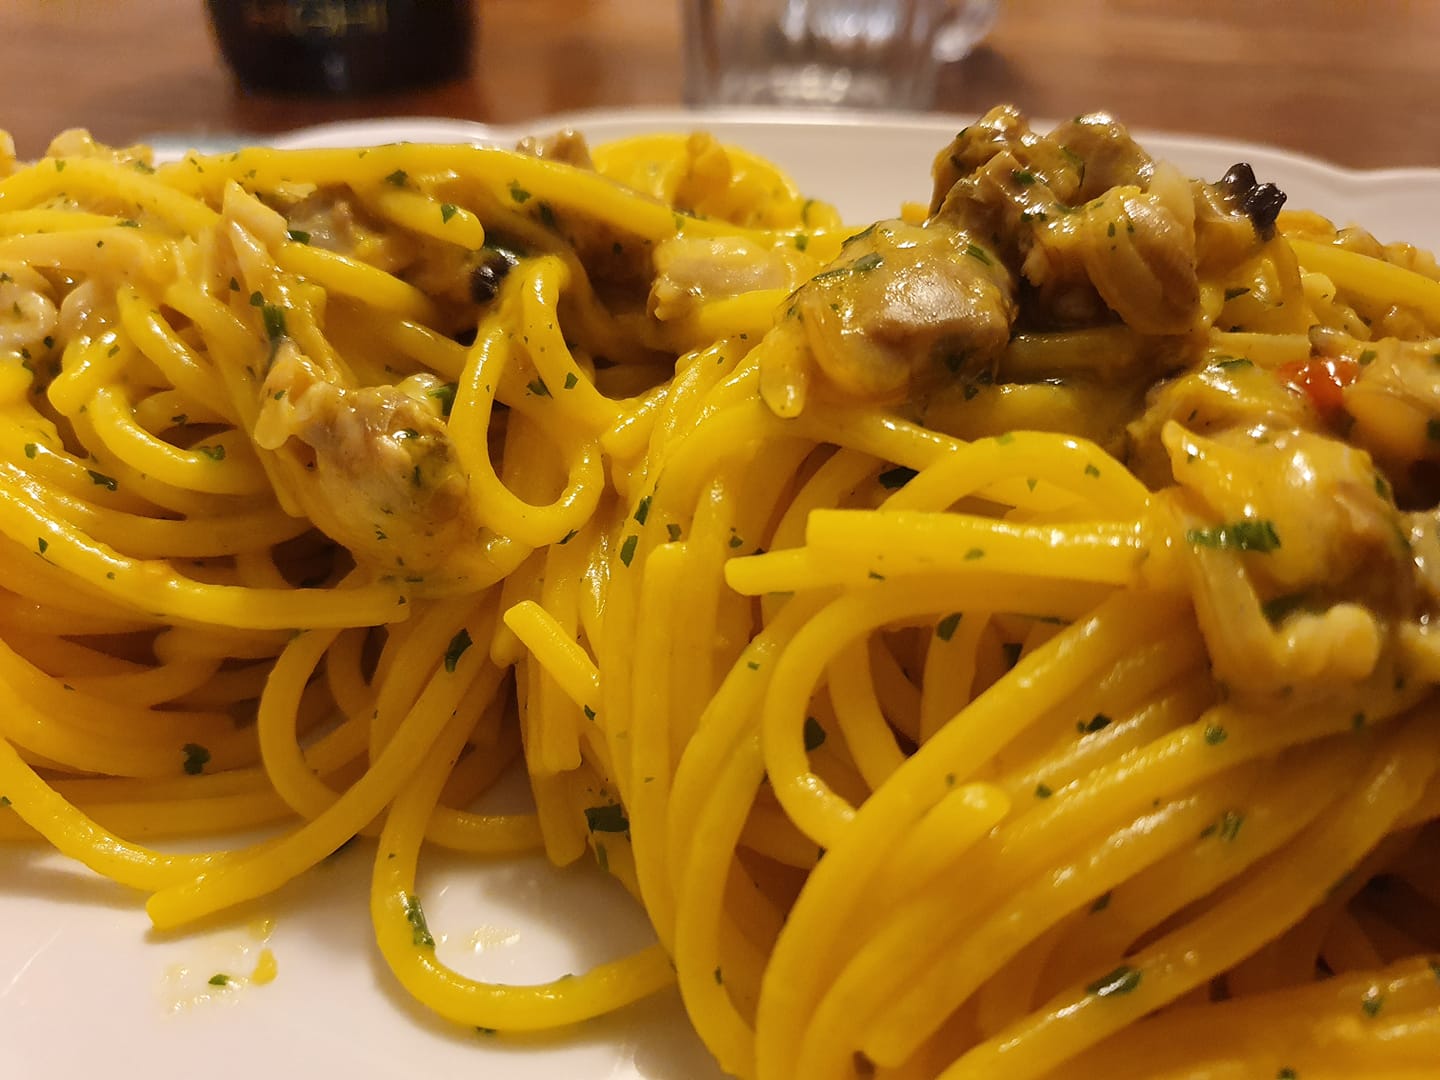 spaghetti-amore-e-fantasia,-meglio-dei-classici-alle-vongole.-l’ingrediente-in-piu-afrodisiaco-che-fa-tutto-cremoso